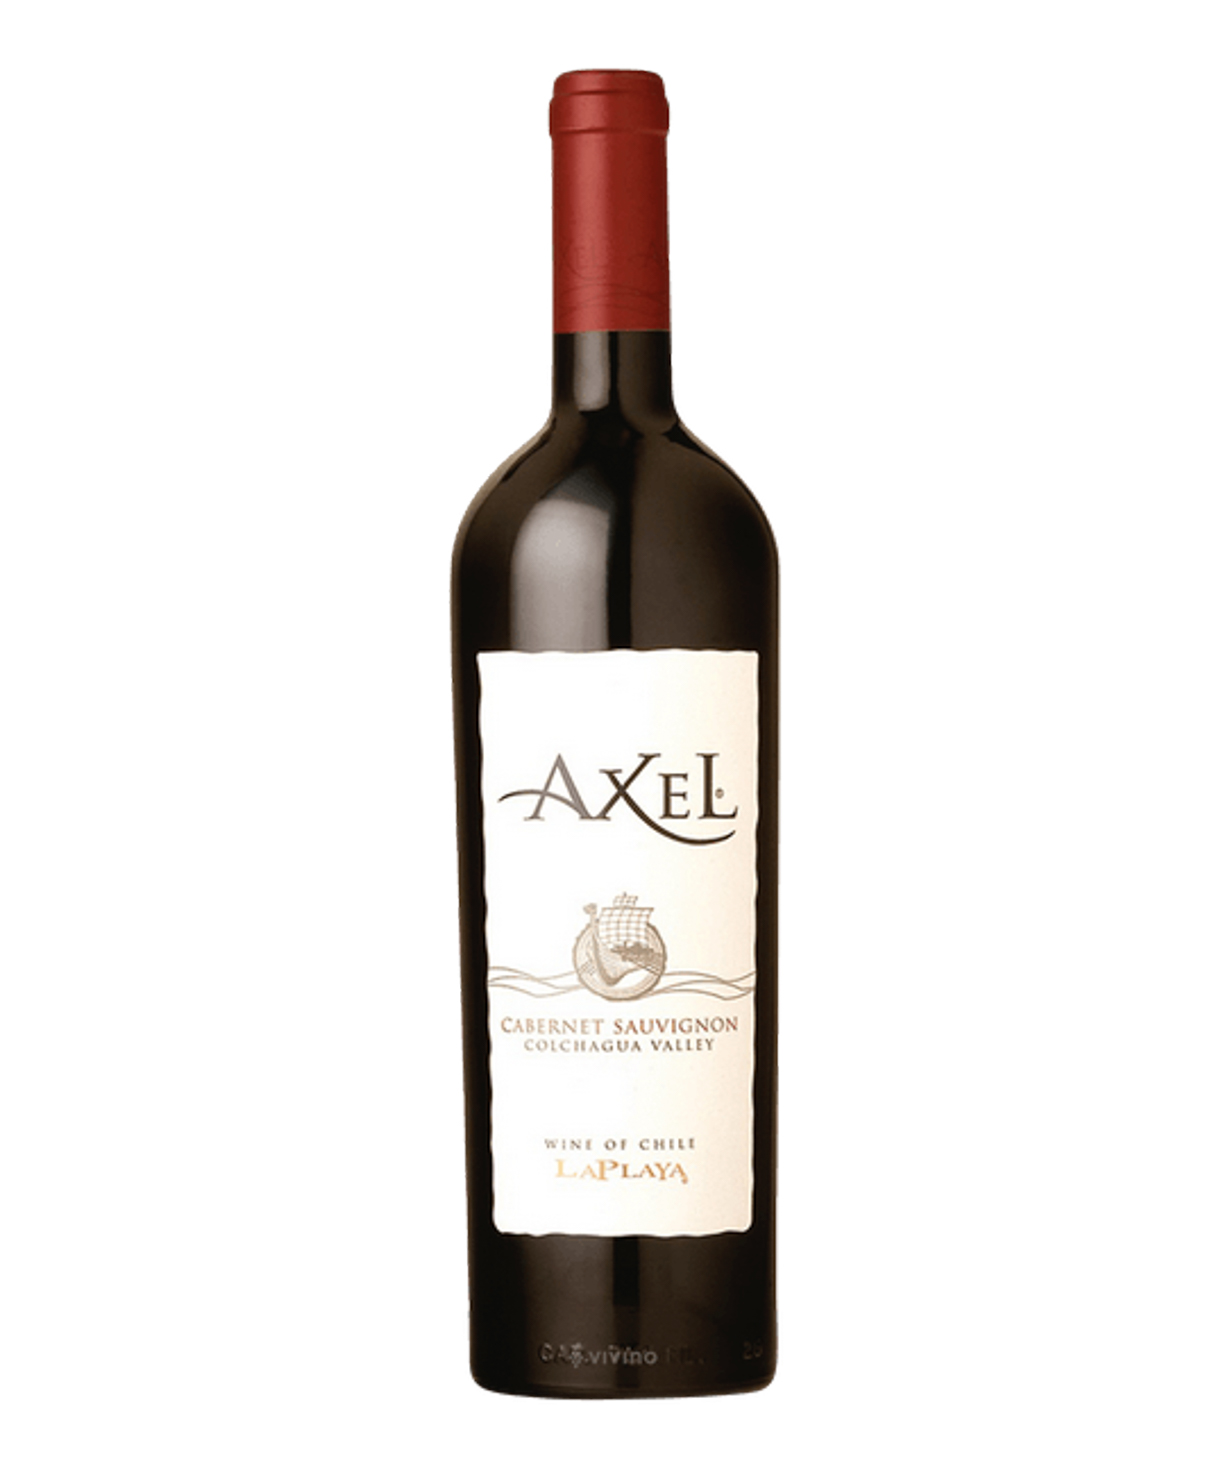 Գինի «La Playa Axel Cabernet Sauvignon» կարմիր, չոր 750մլ